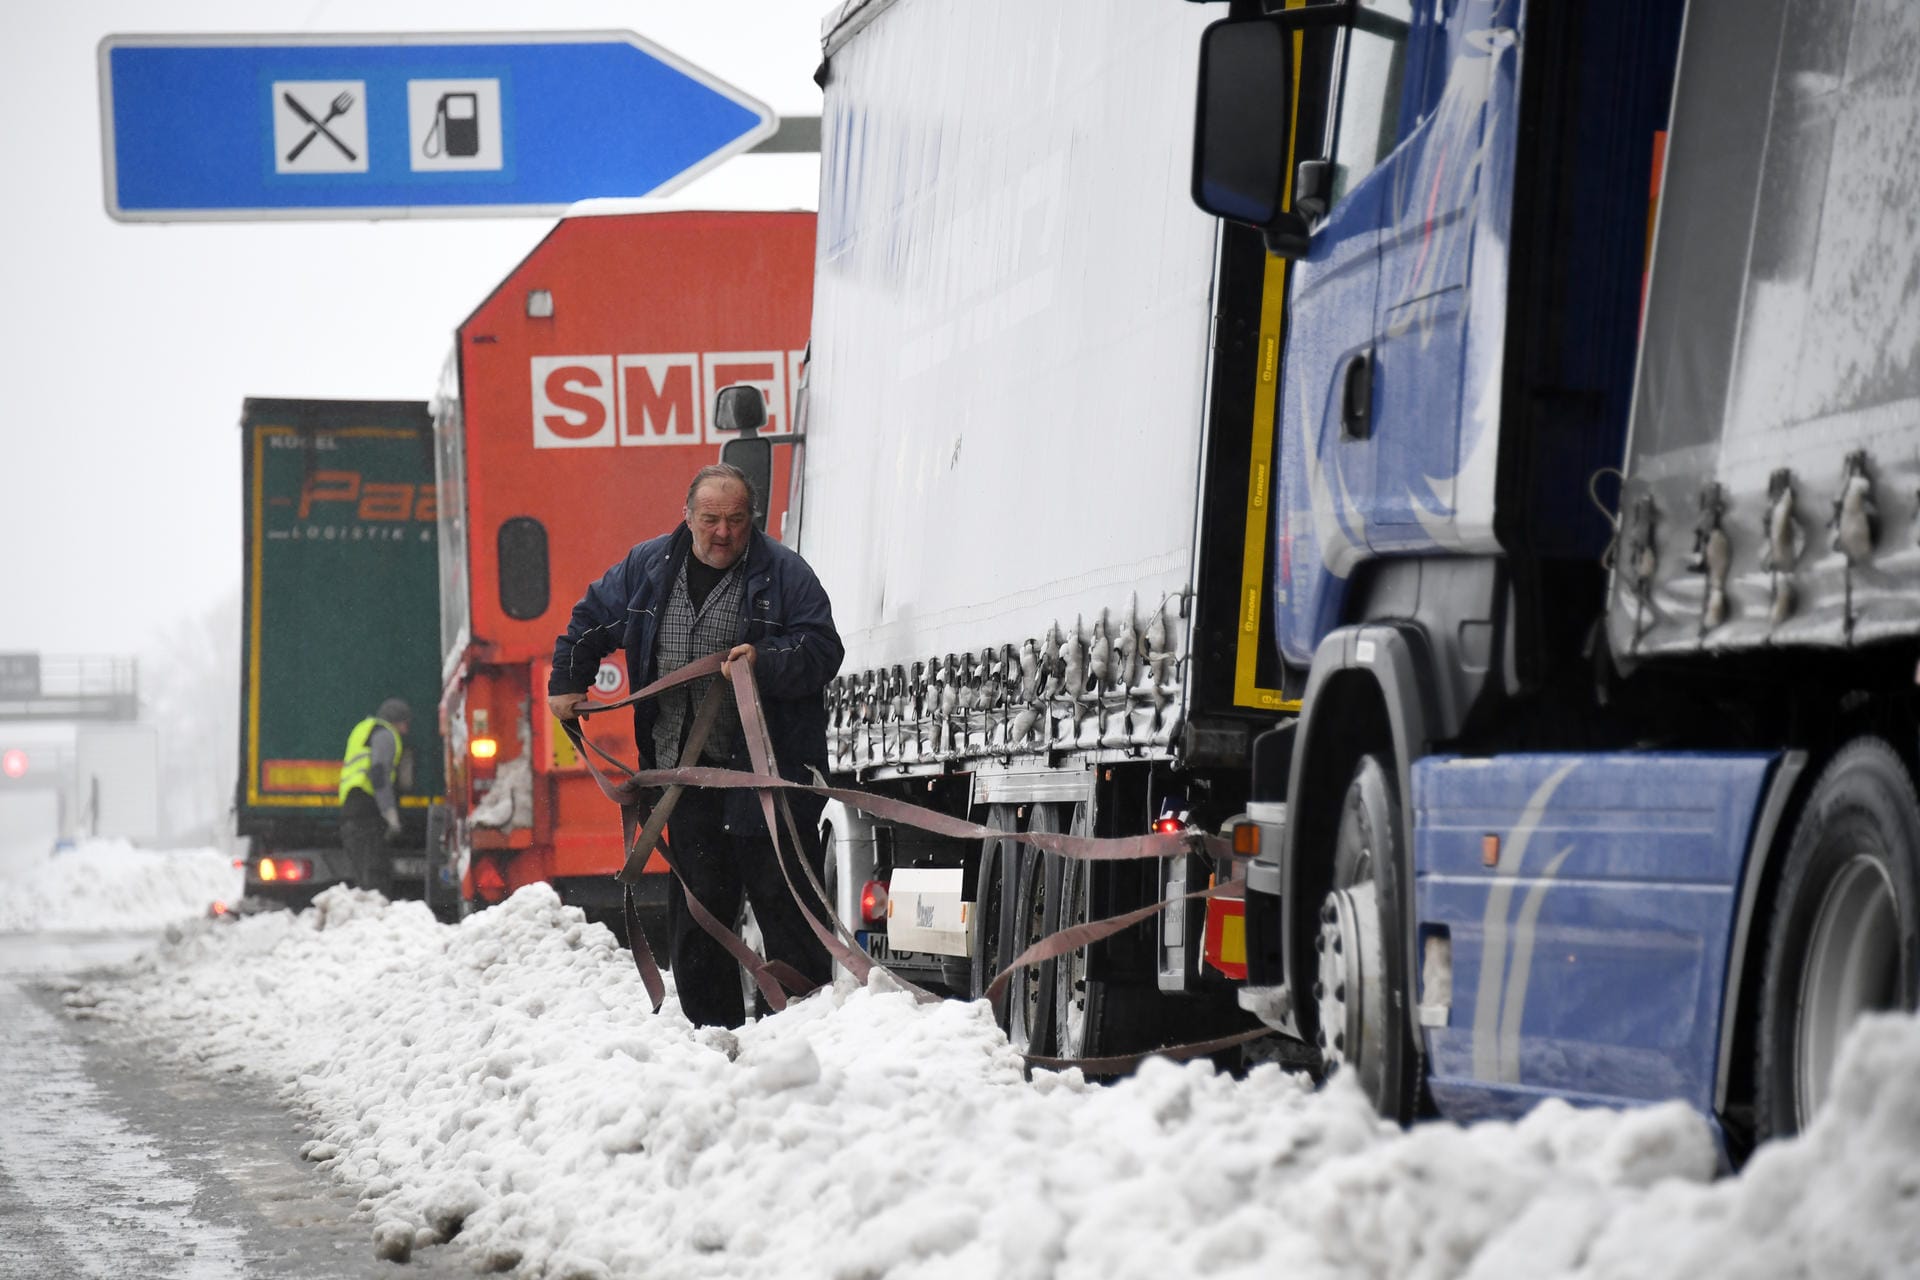 Bei Holzkirchen in Bayern versuchen LKW-Fahrer an der A8 ihre feststeckenden Fahrzeuge aus dem Schnee zu befreien.